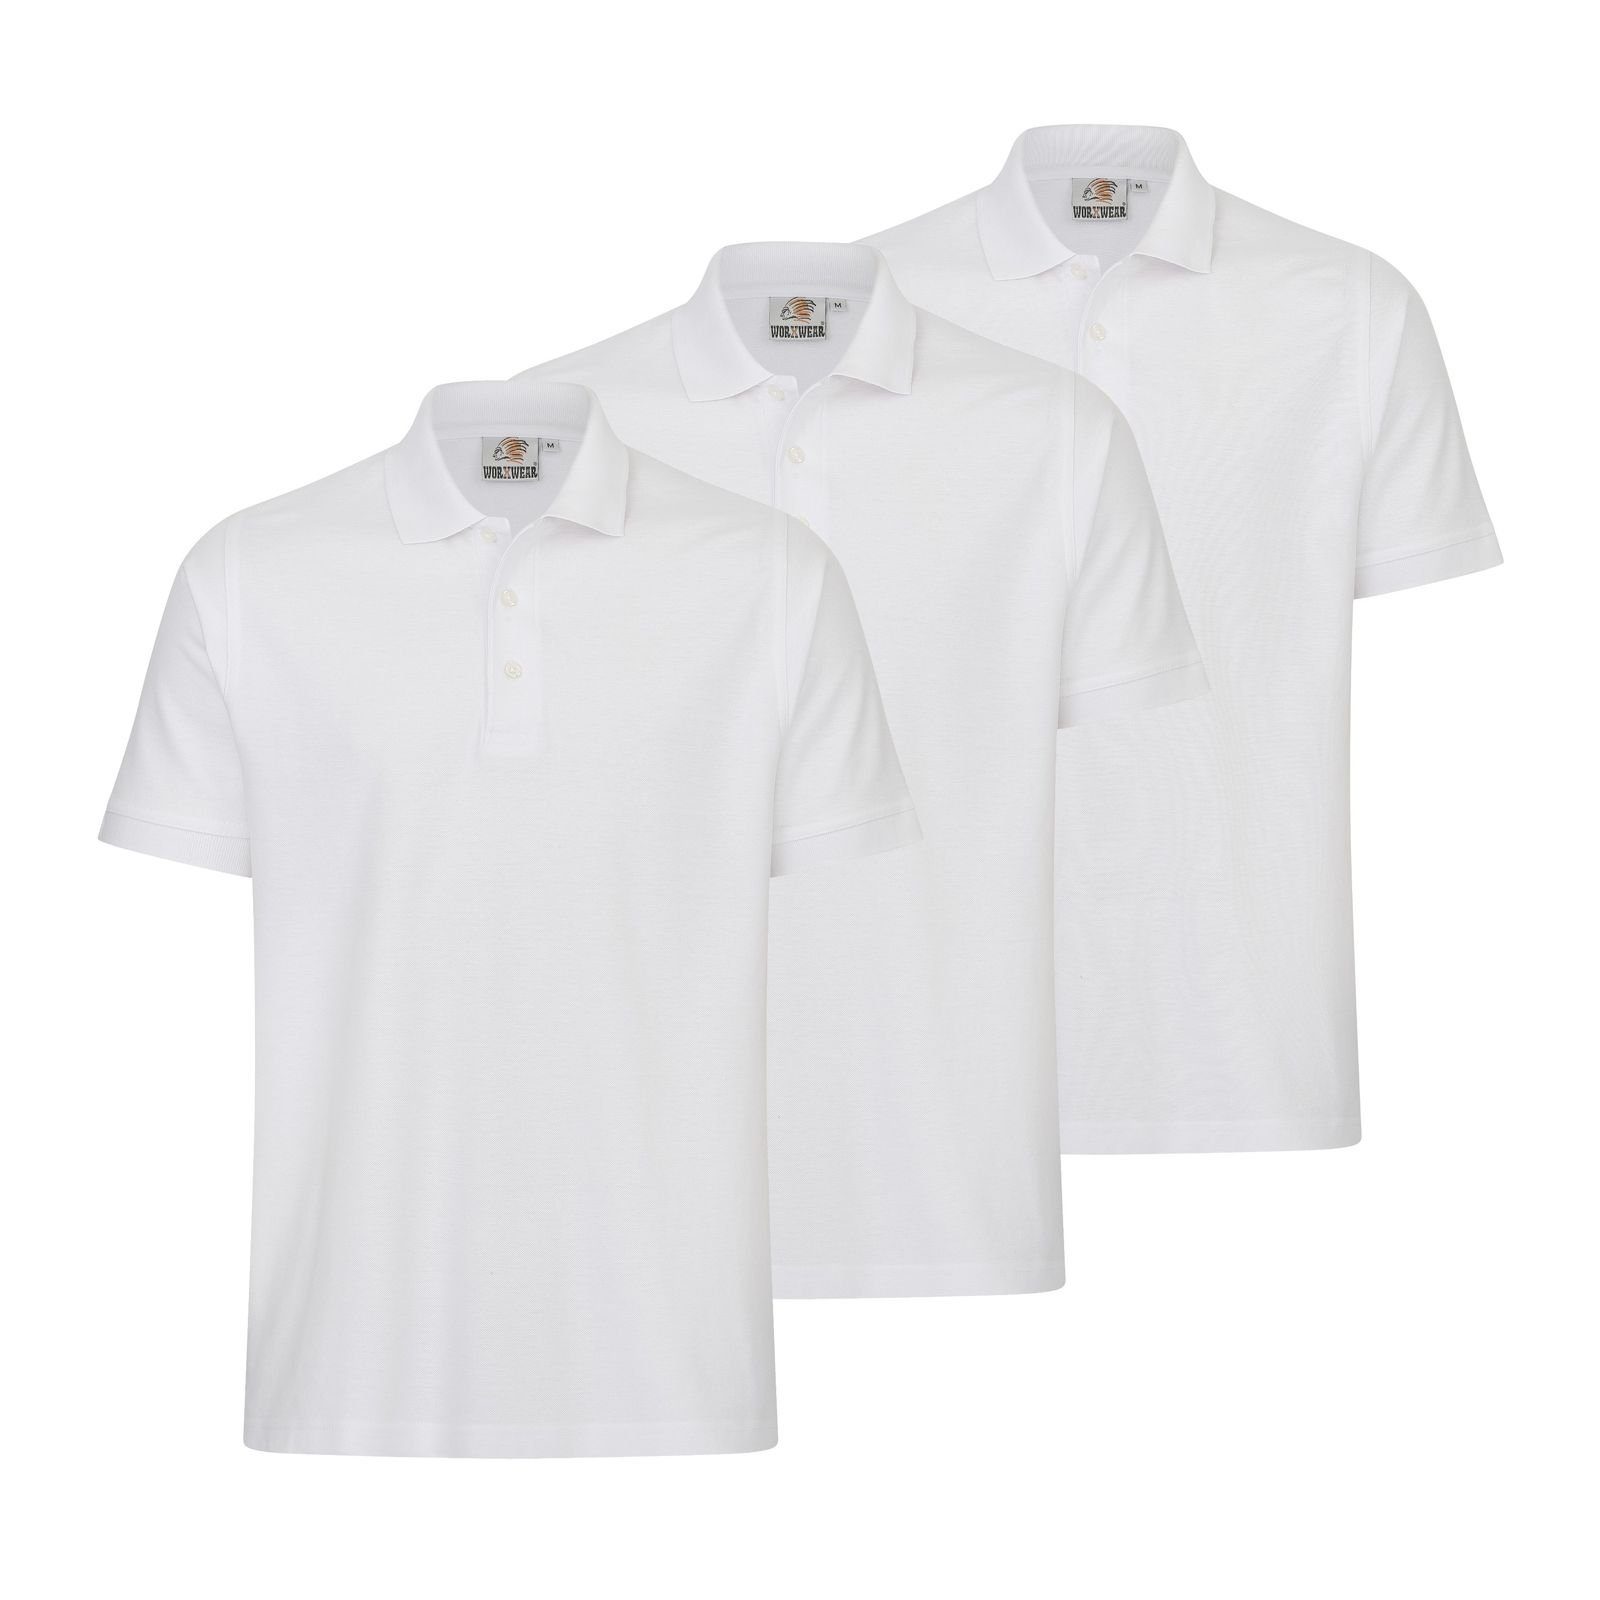 WORXWEAR Poloshirt Herren (Spar-Set, 3er-Pack) strapazierfähiges Poloshirt mit Einlaufwert < 5% weiß